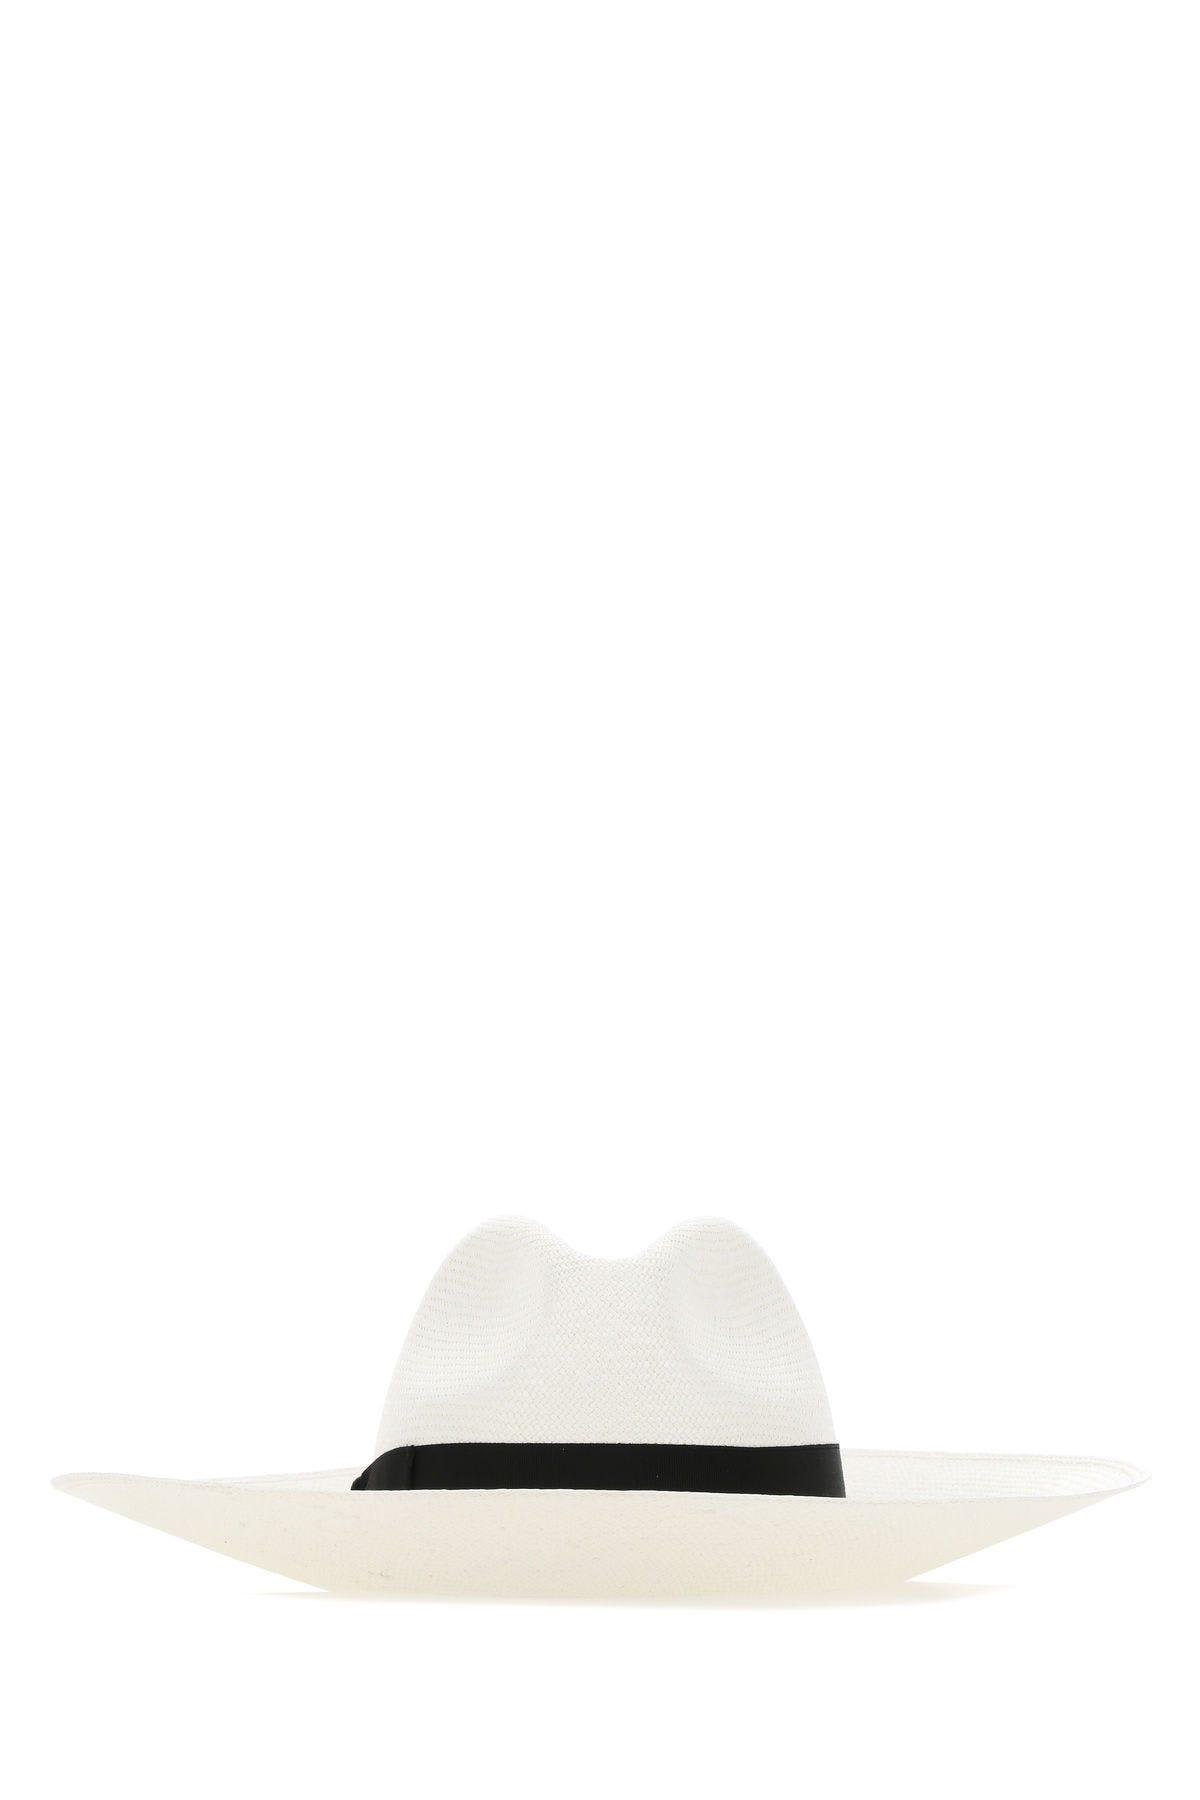 BORSALINO WHITE STRAW HAT